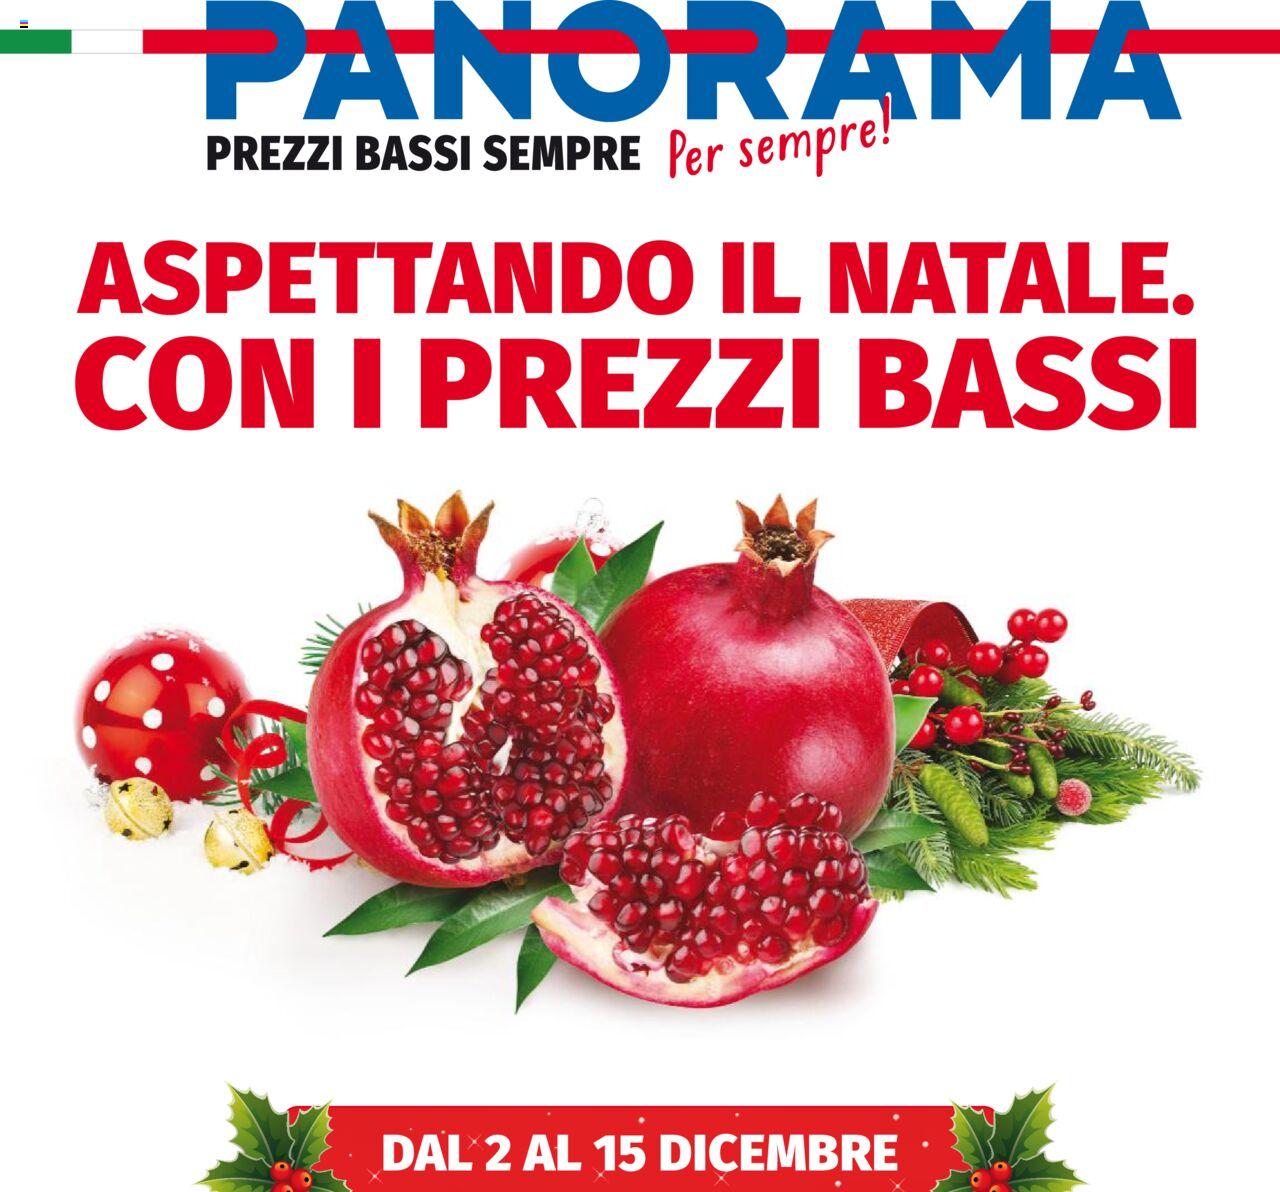 Volantino Panorama Aspettando il Natale dal 2/12 al 15/12/2021